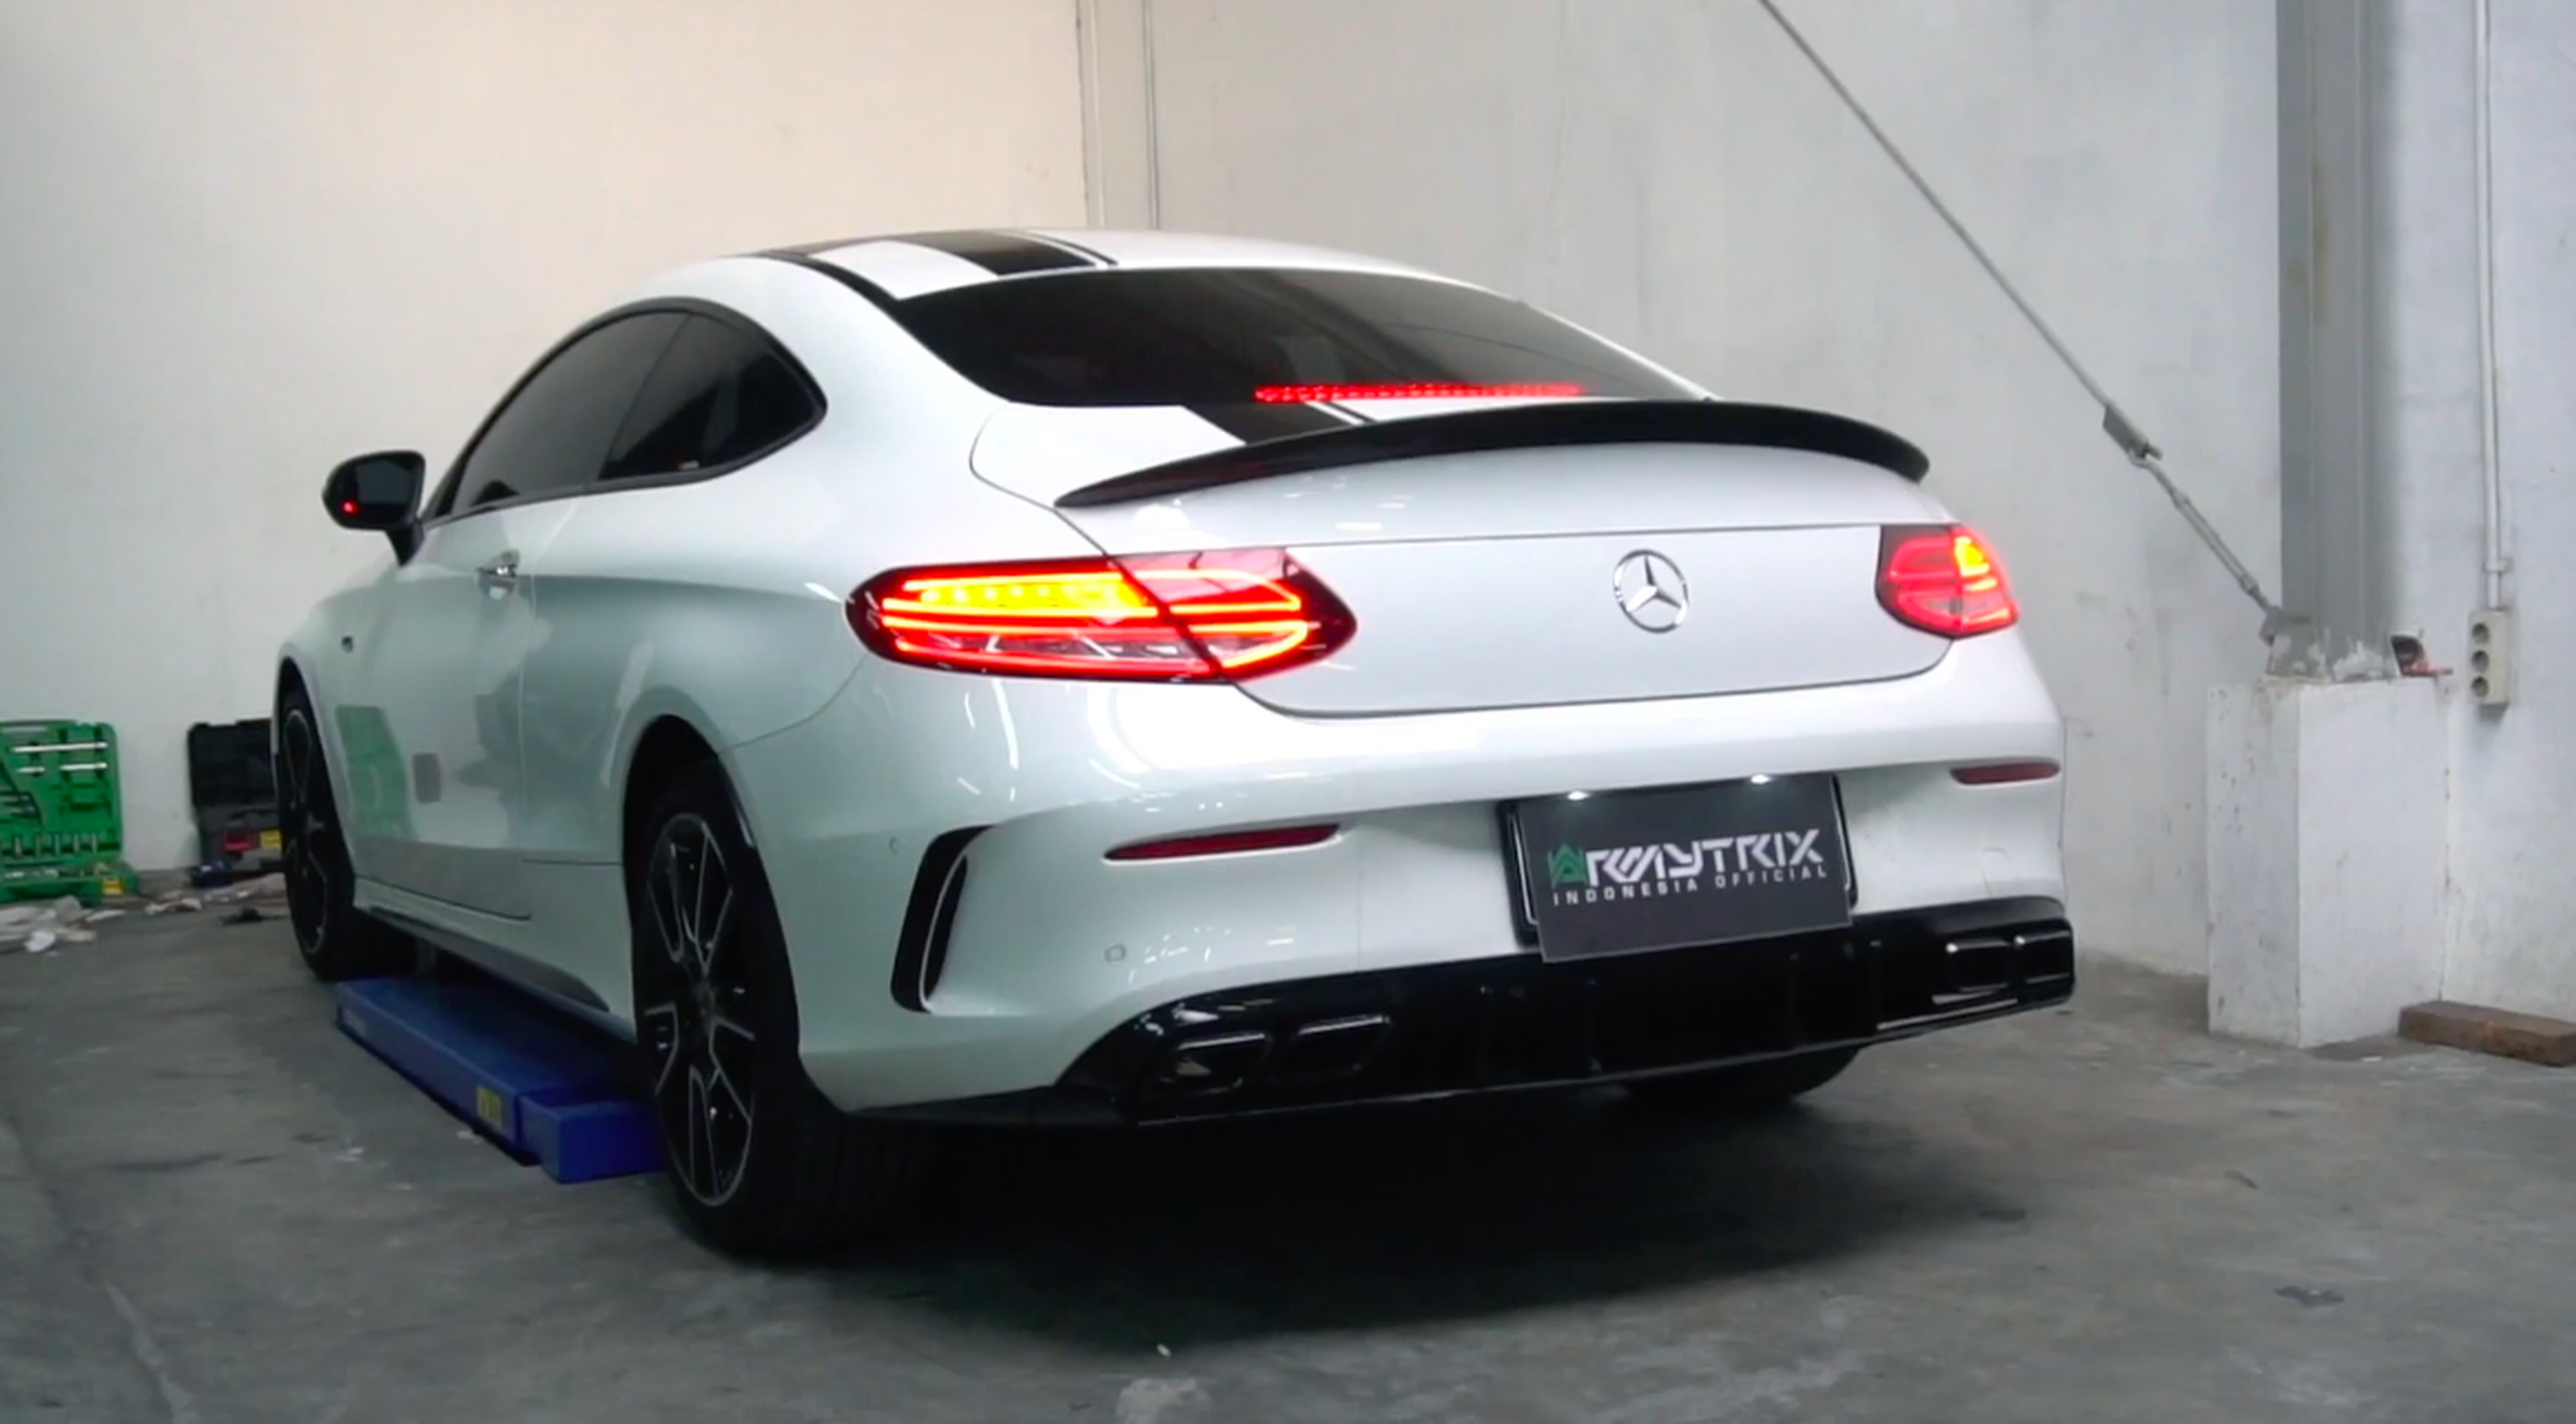 VÍDEO: Se nos cae la baba con el sonido de este Mercedes Clase C Coupé 2019 con escapes modificados